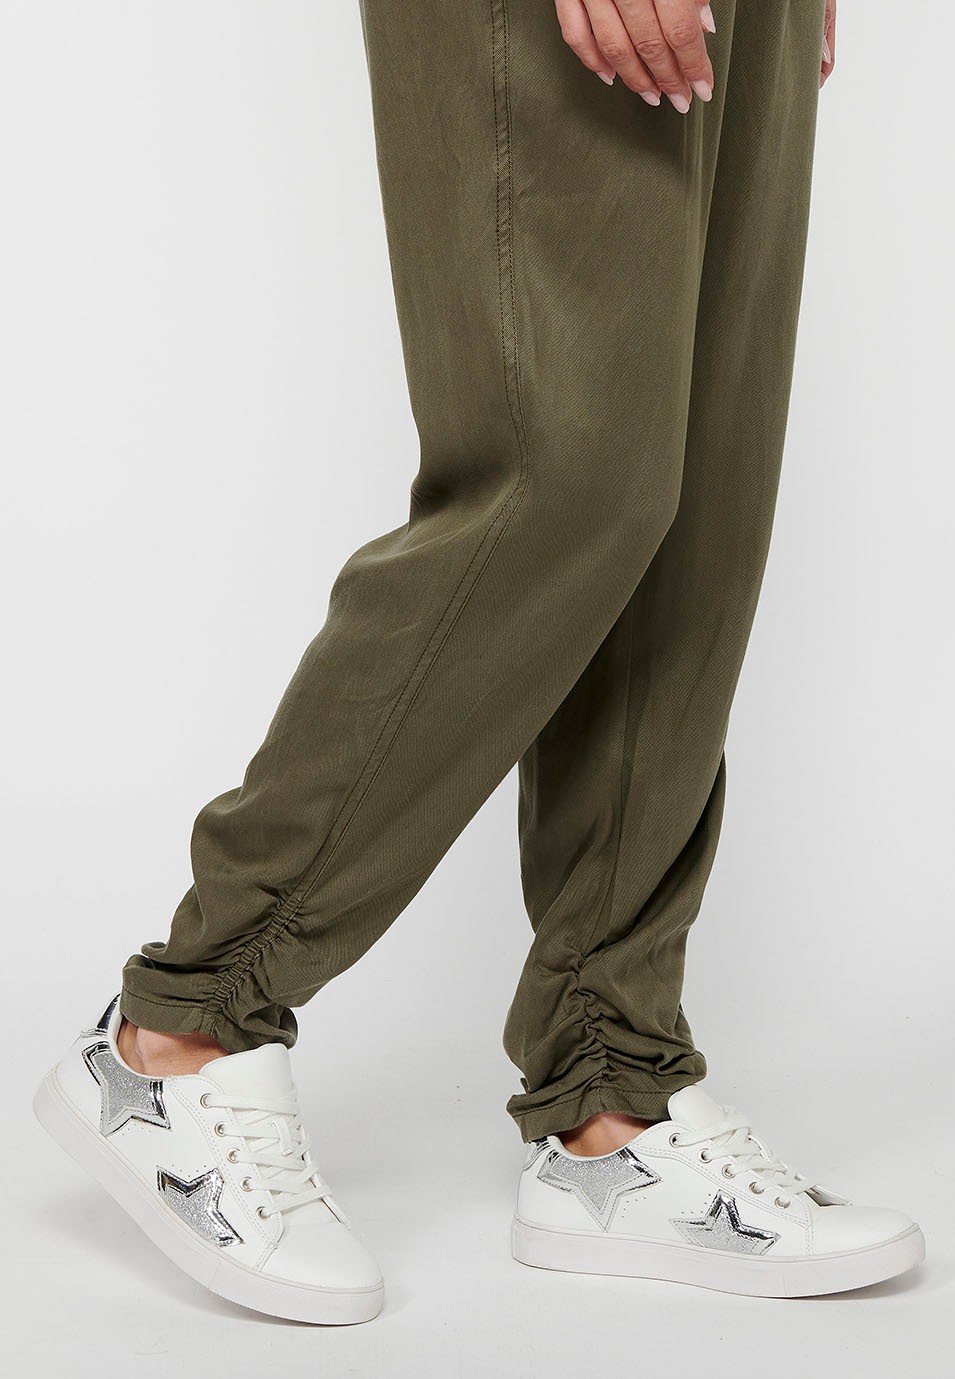 Lange Jogginghose mit gewelltem Finish und gummiertem Bund mit vier Taschen, zwei Gesäßtaschen mit Klappe in der Farbe Khaki für Damen 8